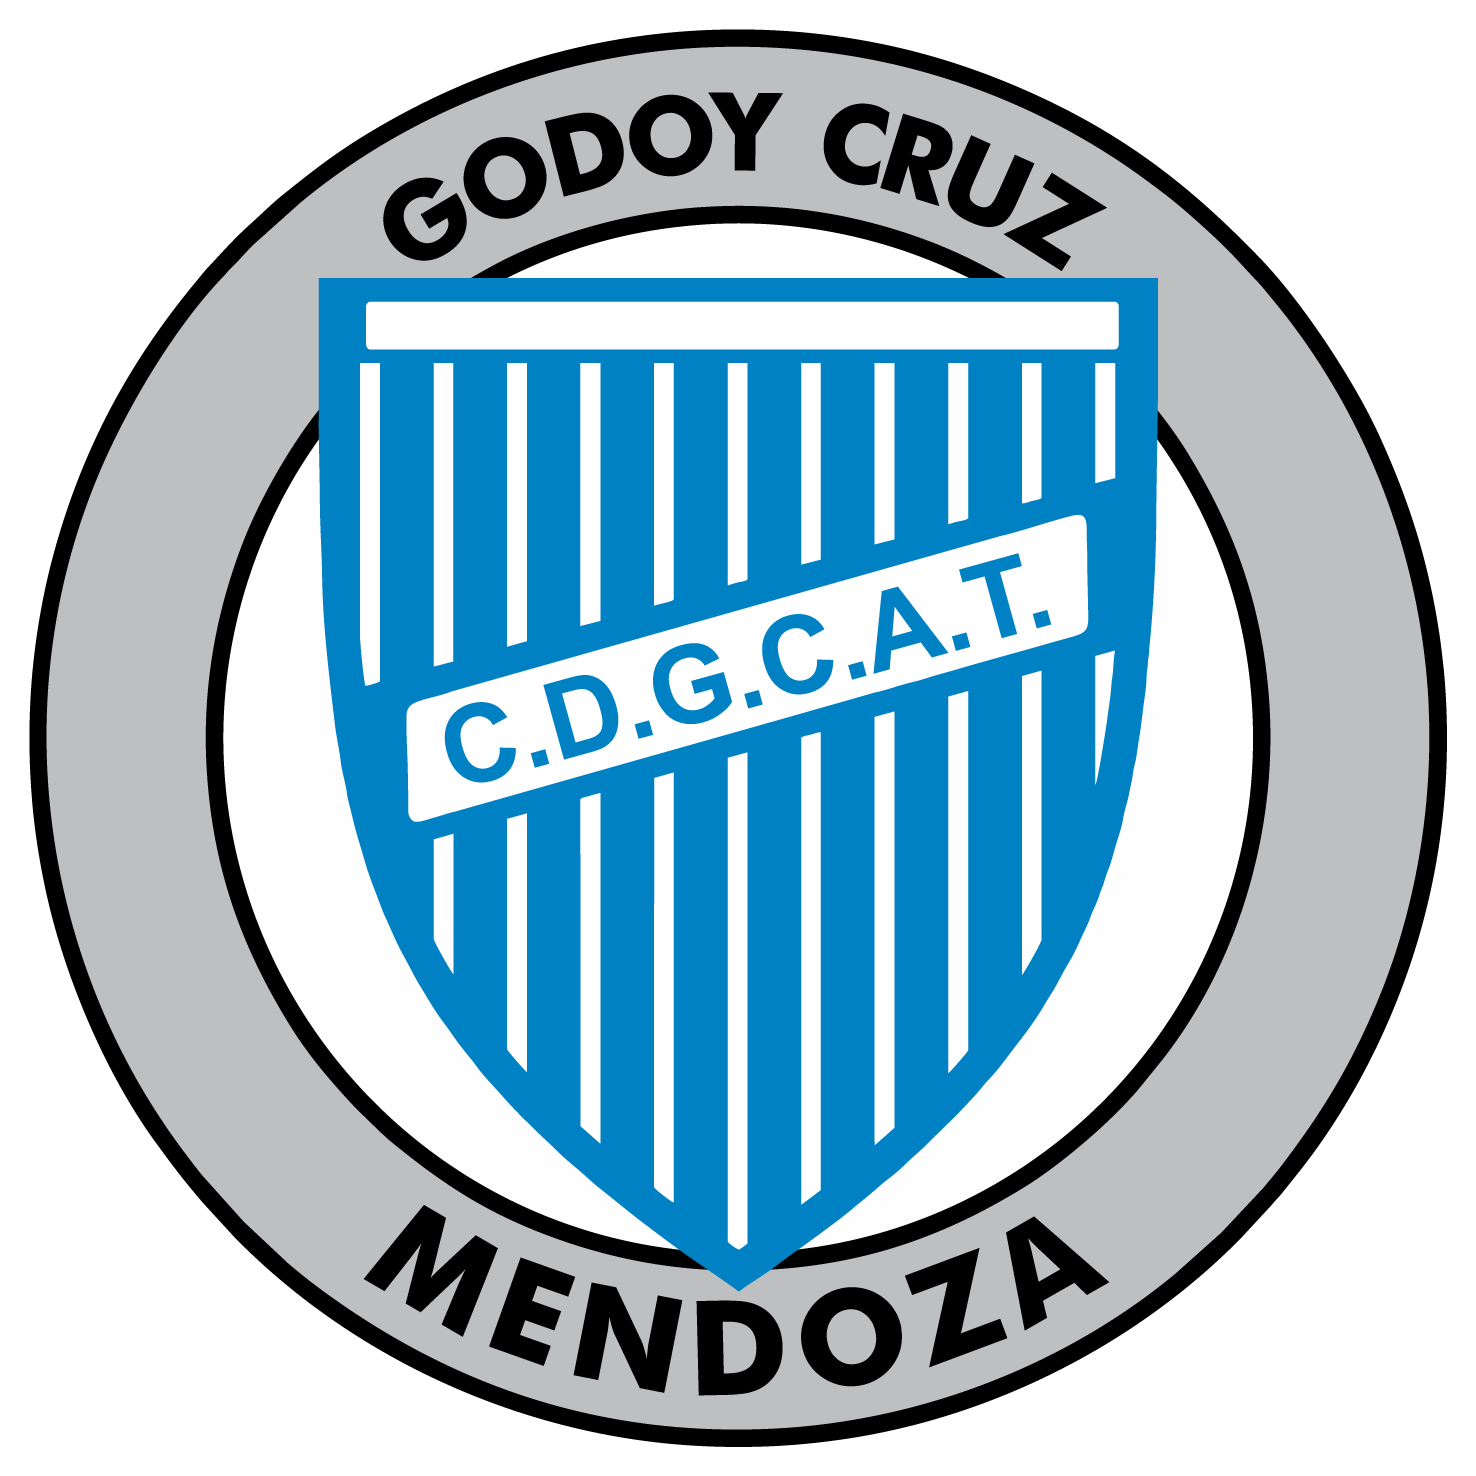 Pin Club Deportivo Godoy Cruz Antonio Tomba Image to